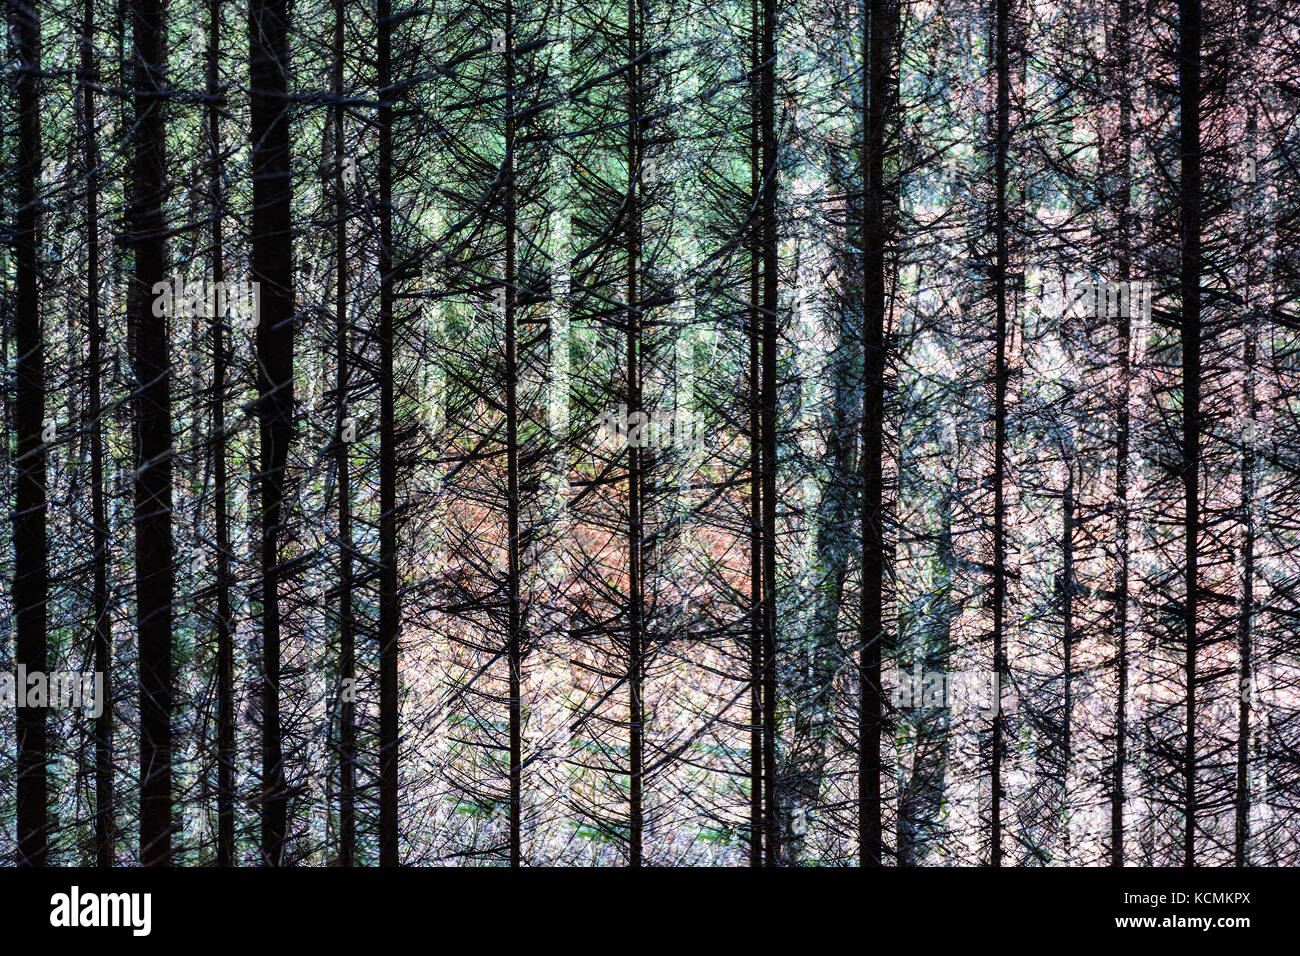 Résumé de l'exposition multiple couleur image artistique d'arbres dans une forêt, modèle extérieur naturel surréaliste Banque D'Images